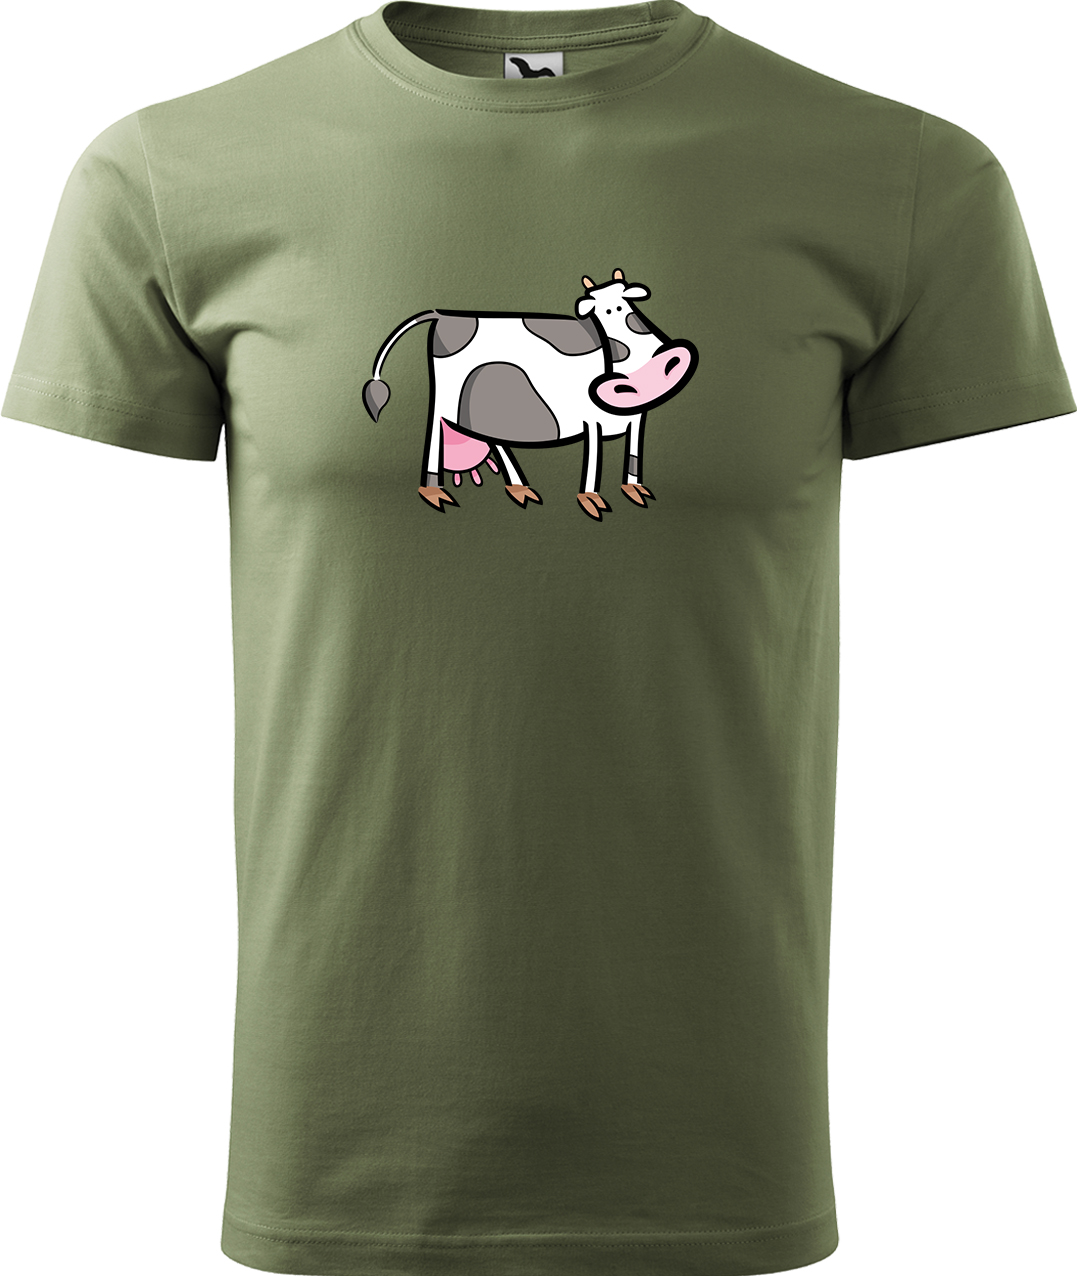 Pánské tričko s krávou - Kravička Velikost: 4XL, Barva: Světlá khaki (28), Střih: pánský